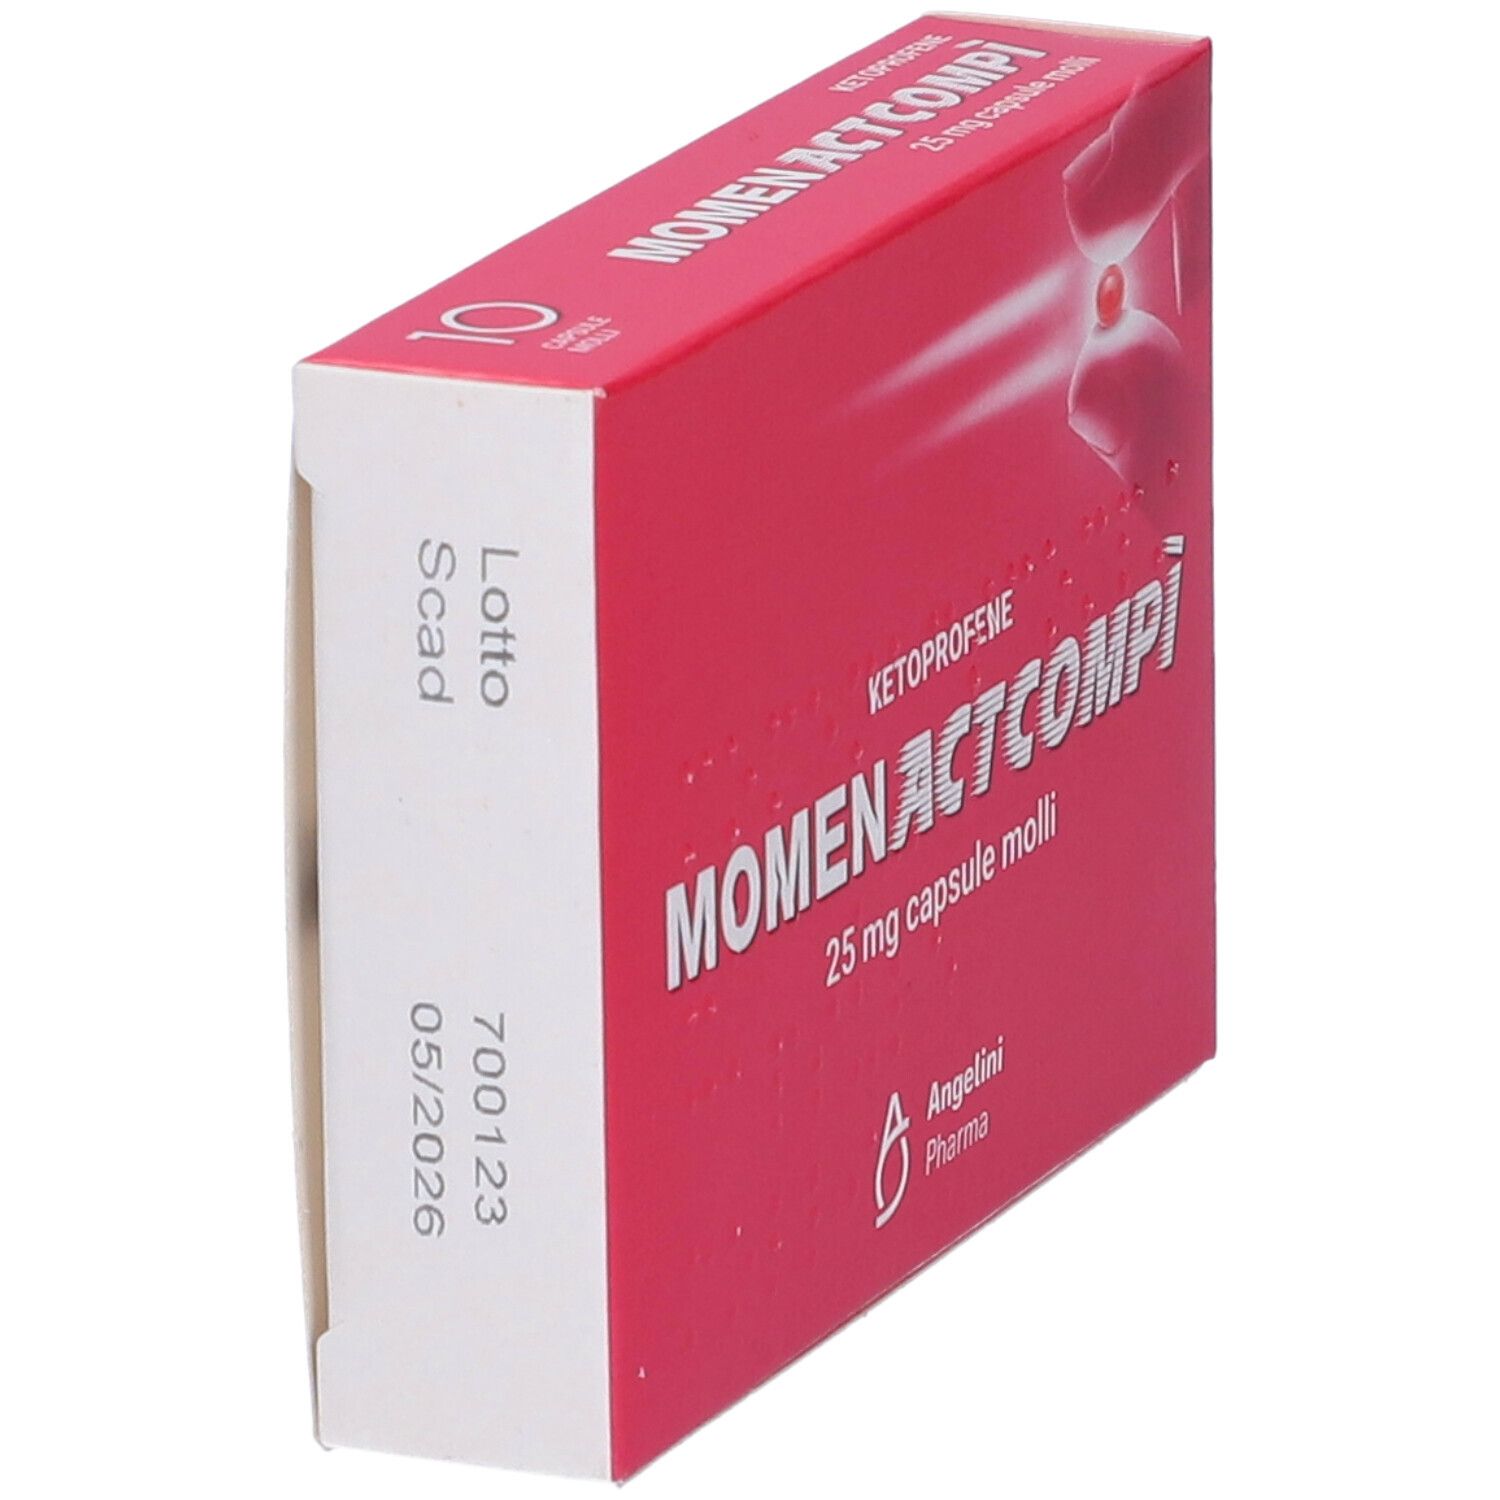 Moment Act Compì 25 mg Capsule Molli